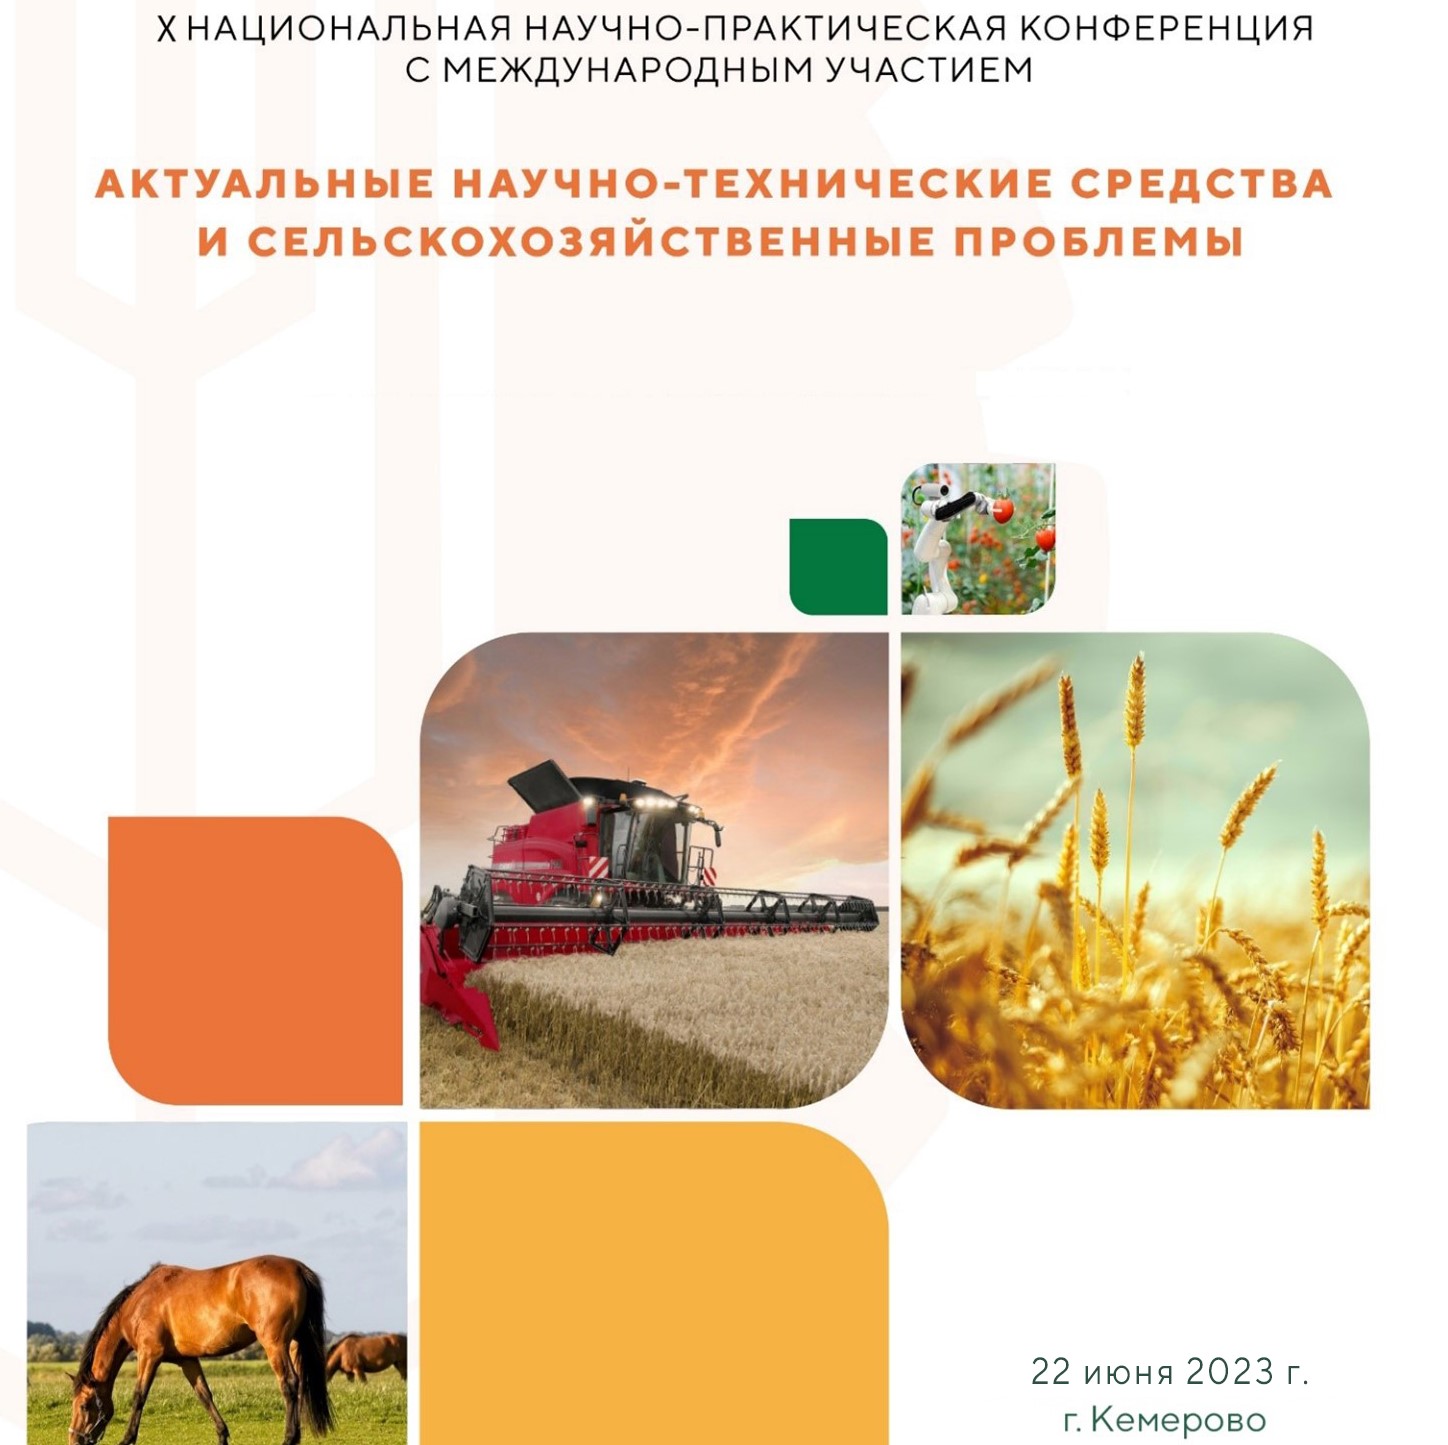 X Национальная научно-практическая конференция с международным участием «Актуальные научно-технические средства и сельскохозяйственные проблемы»